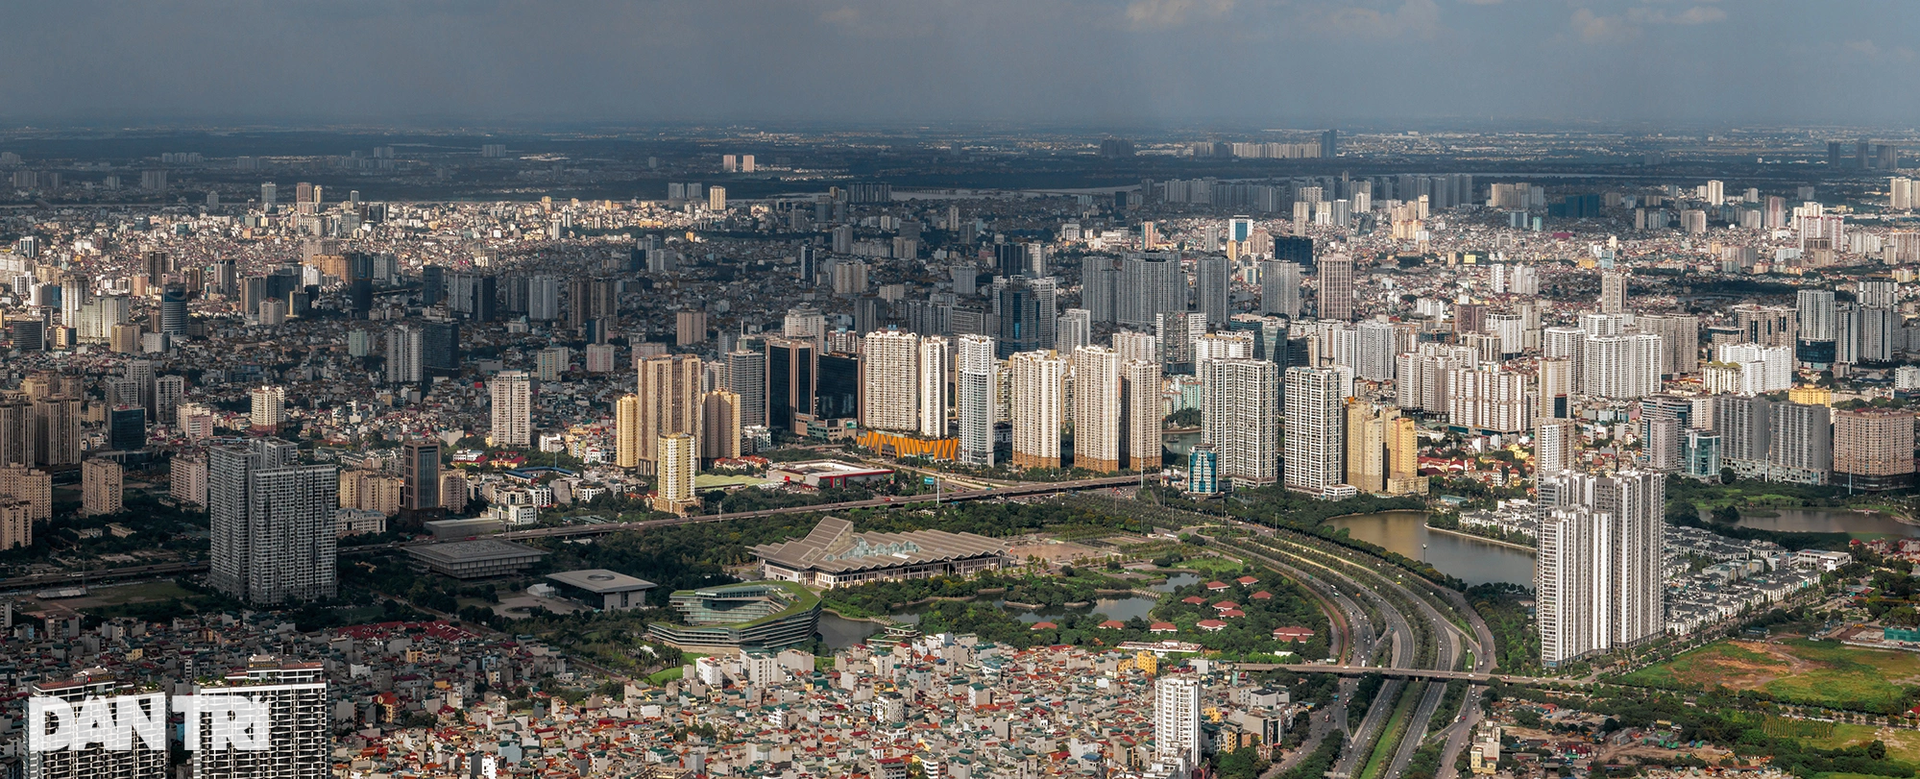 Ngắm đô thị hiện đại, phát triển không ngừng của Hà Nội - 5